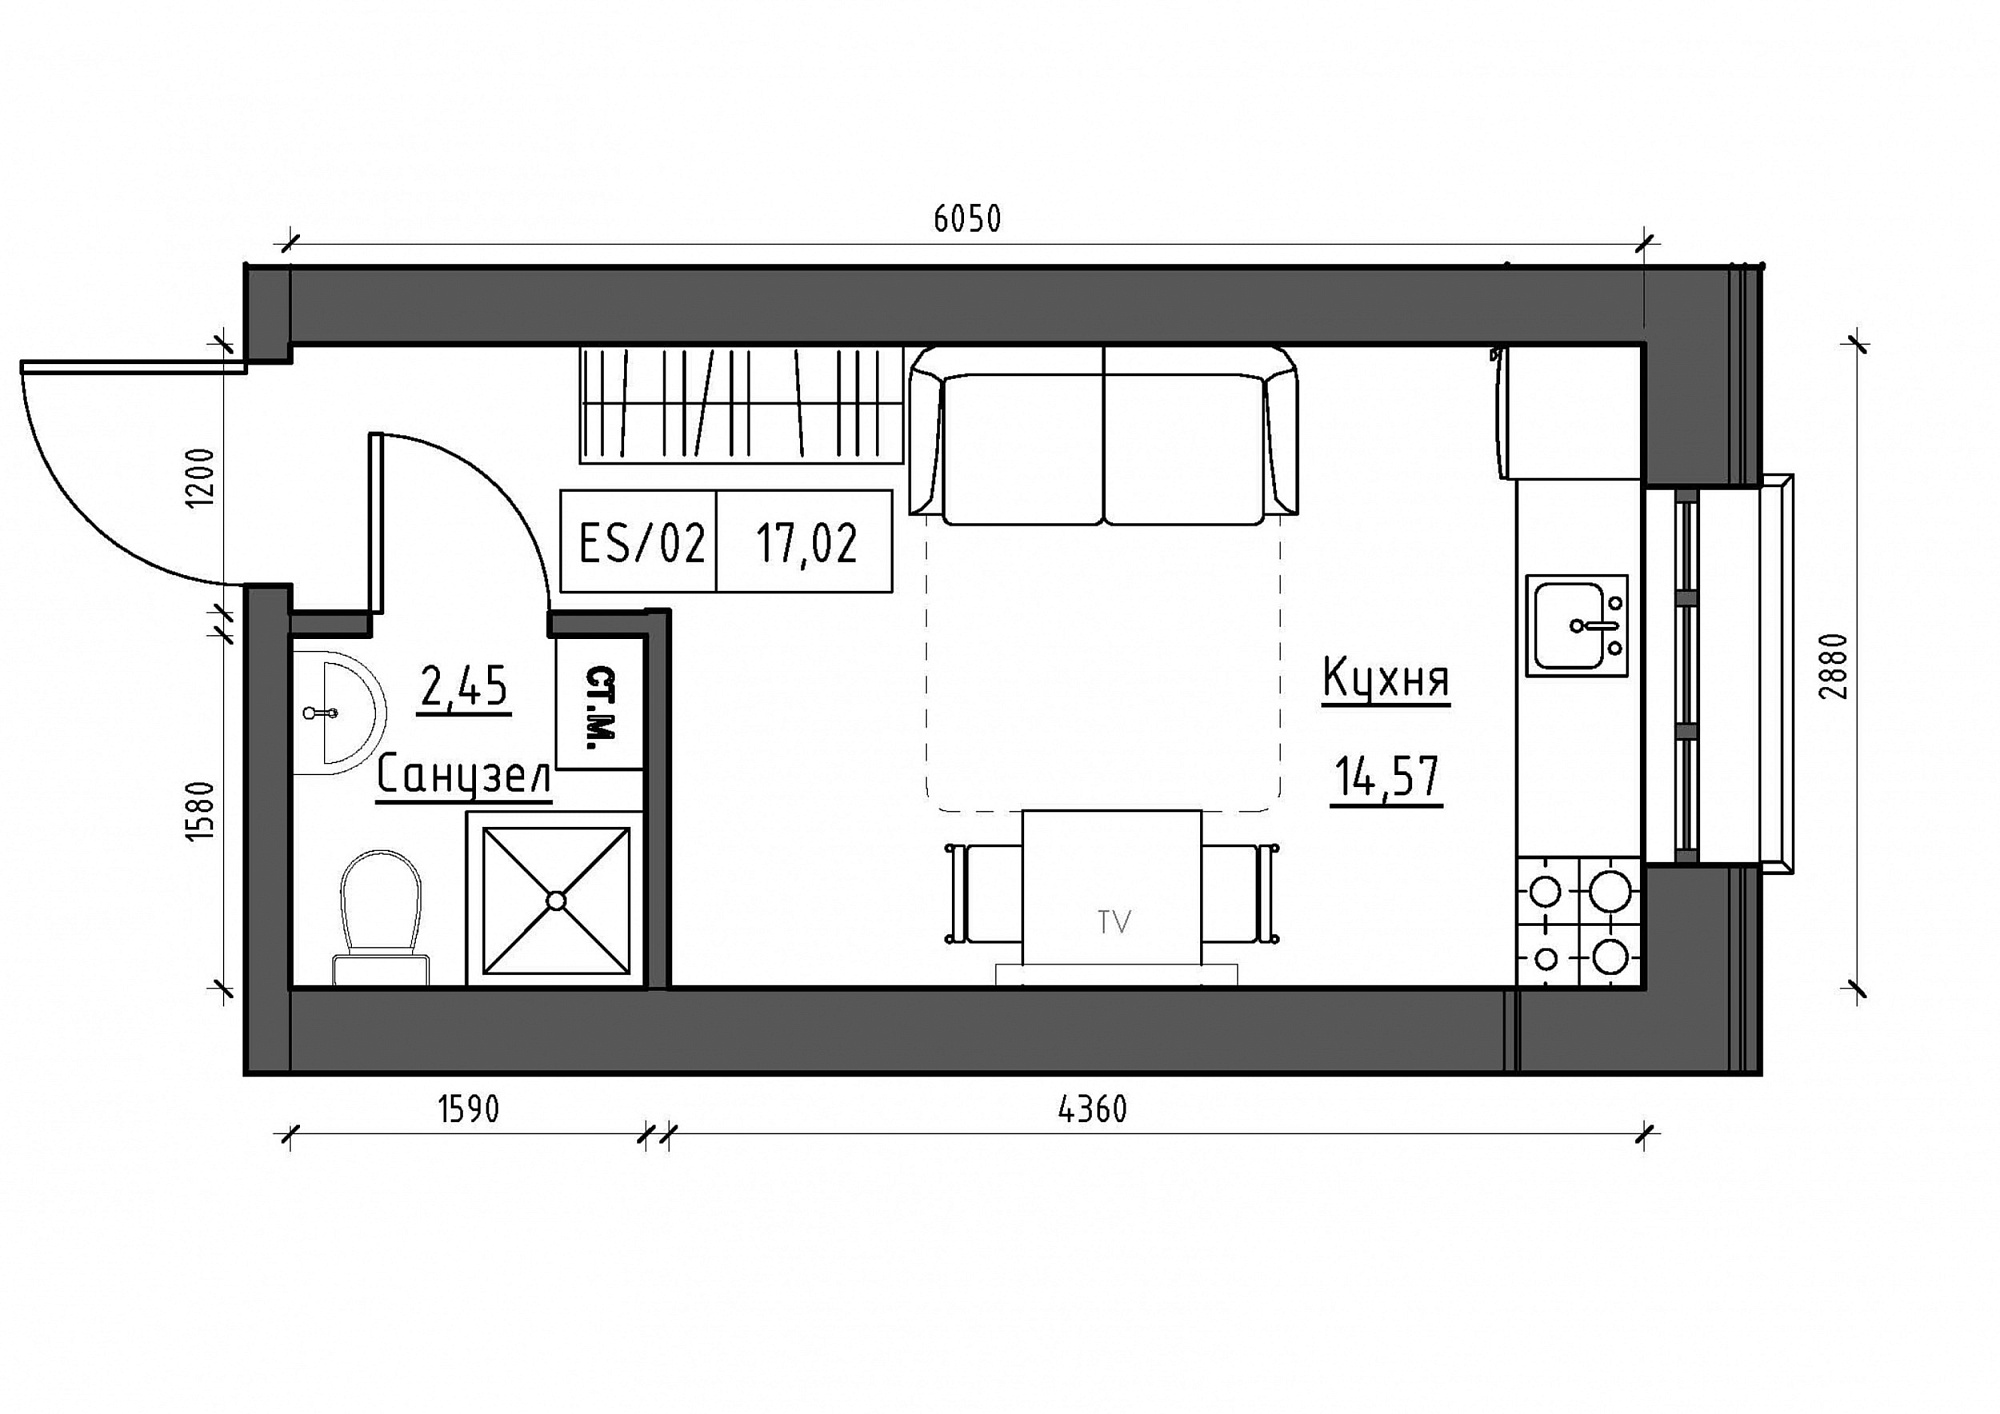 Планування Smart-квартира площею 17.02м2, KS-012-05/0017.